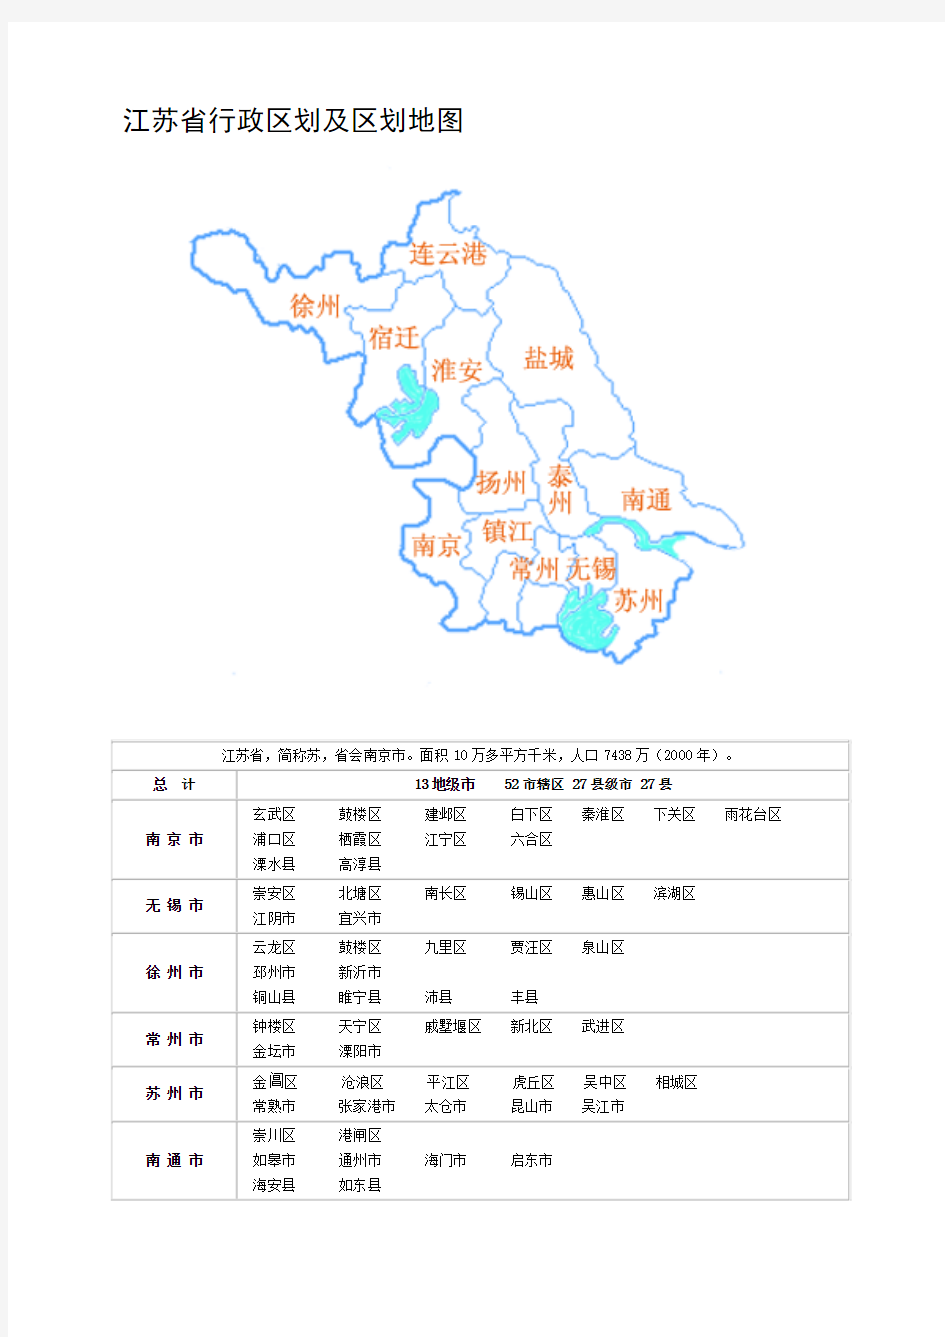 江苏省行政区划及区划地图